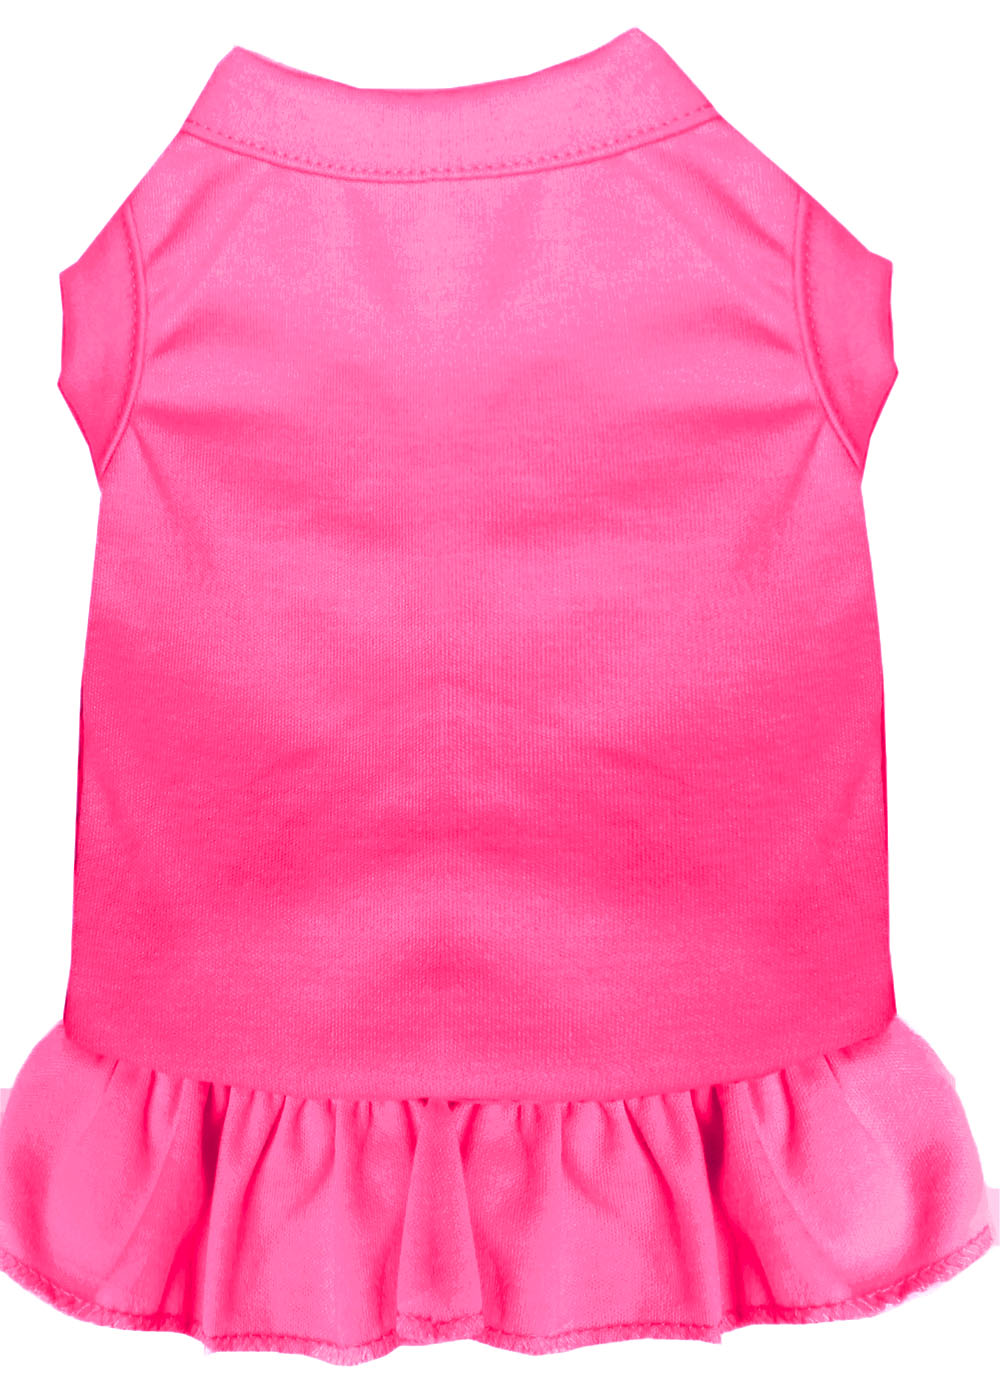 Plain Pet Dress Bright Pink 4X